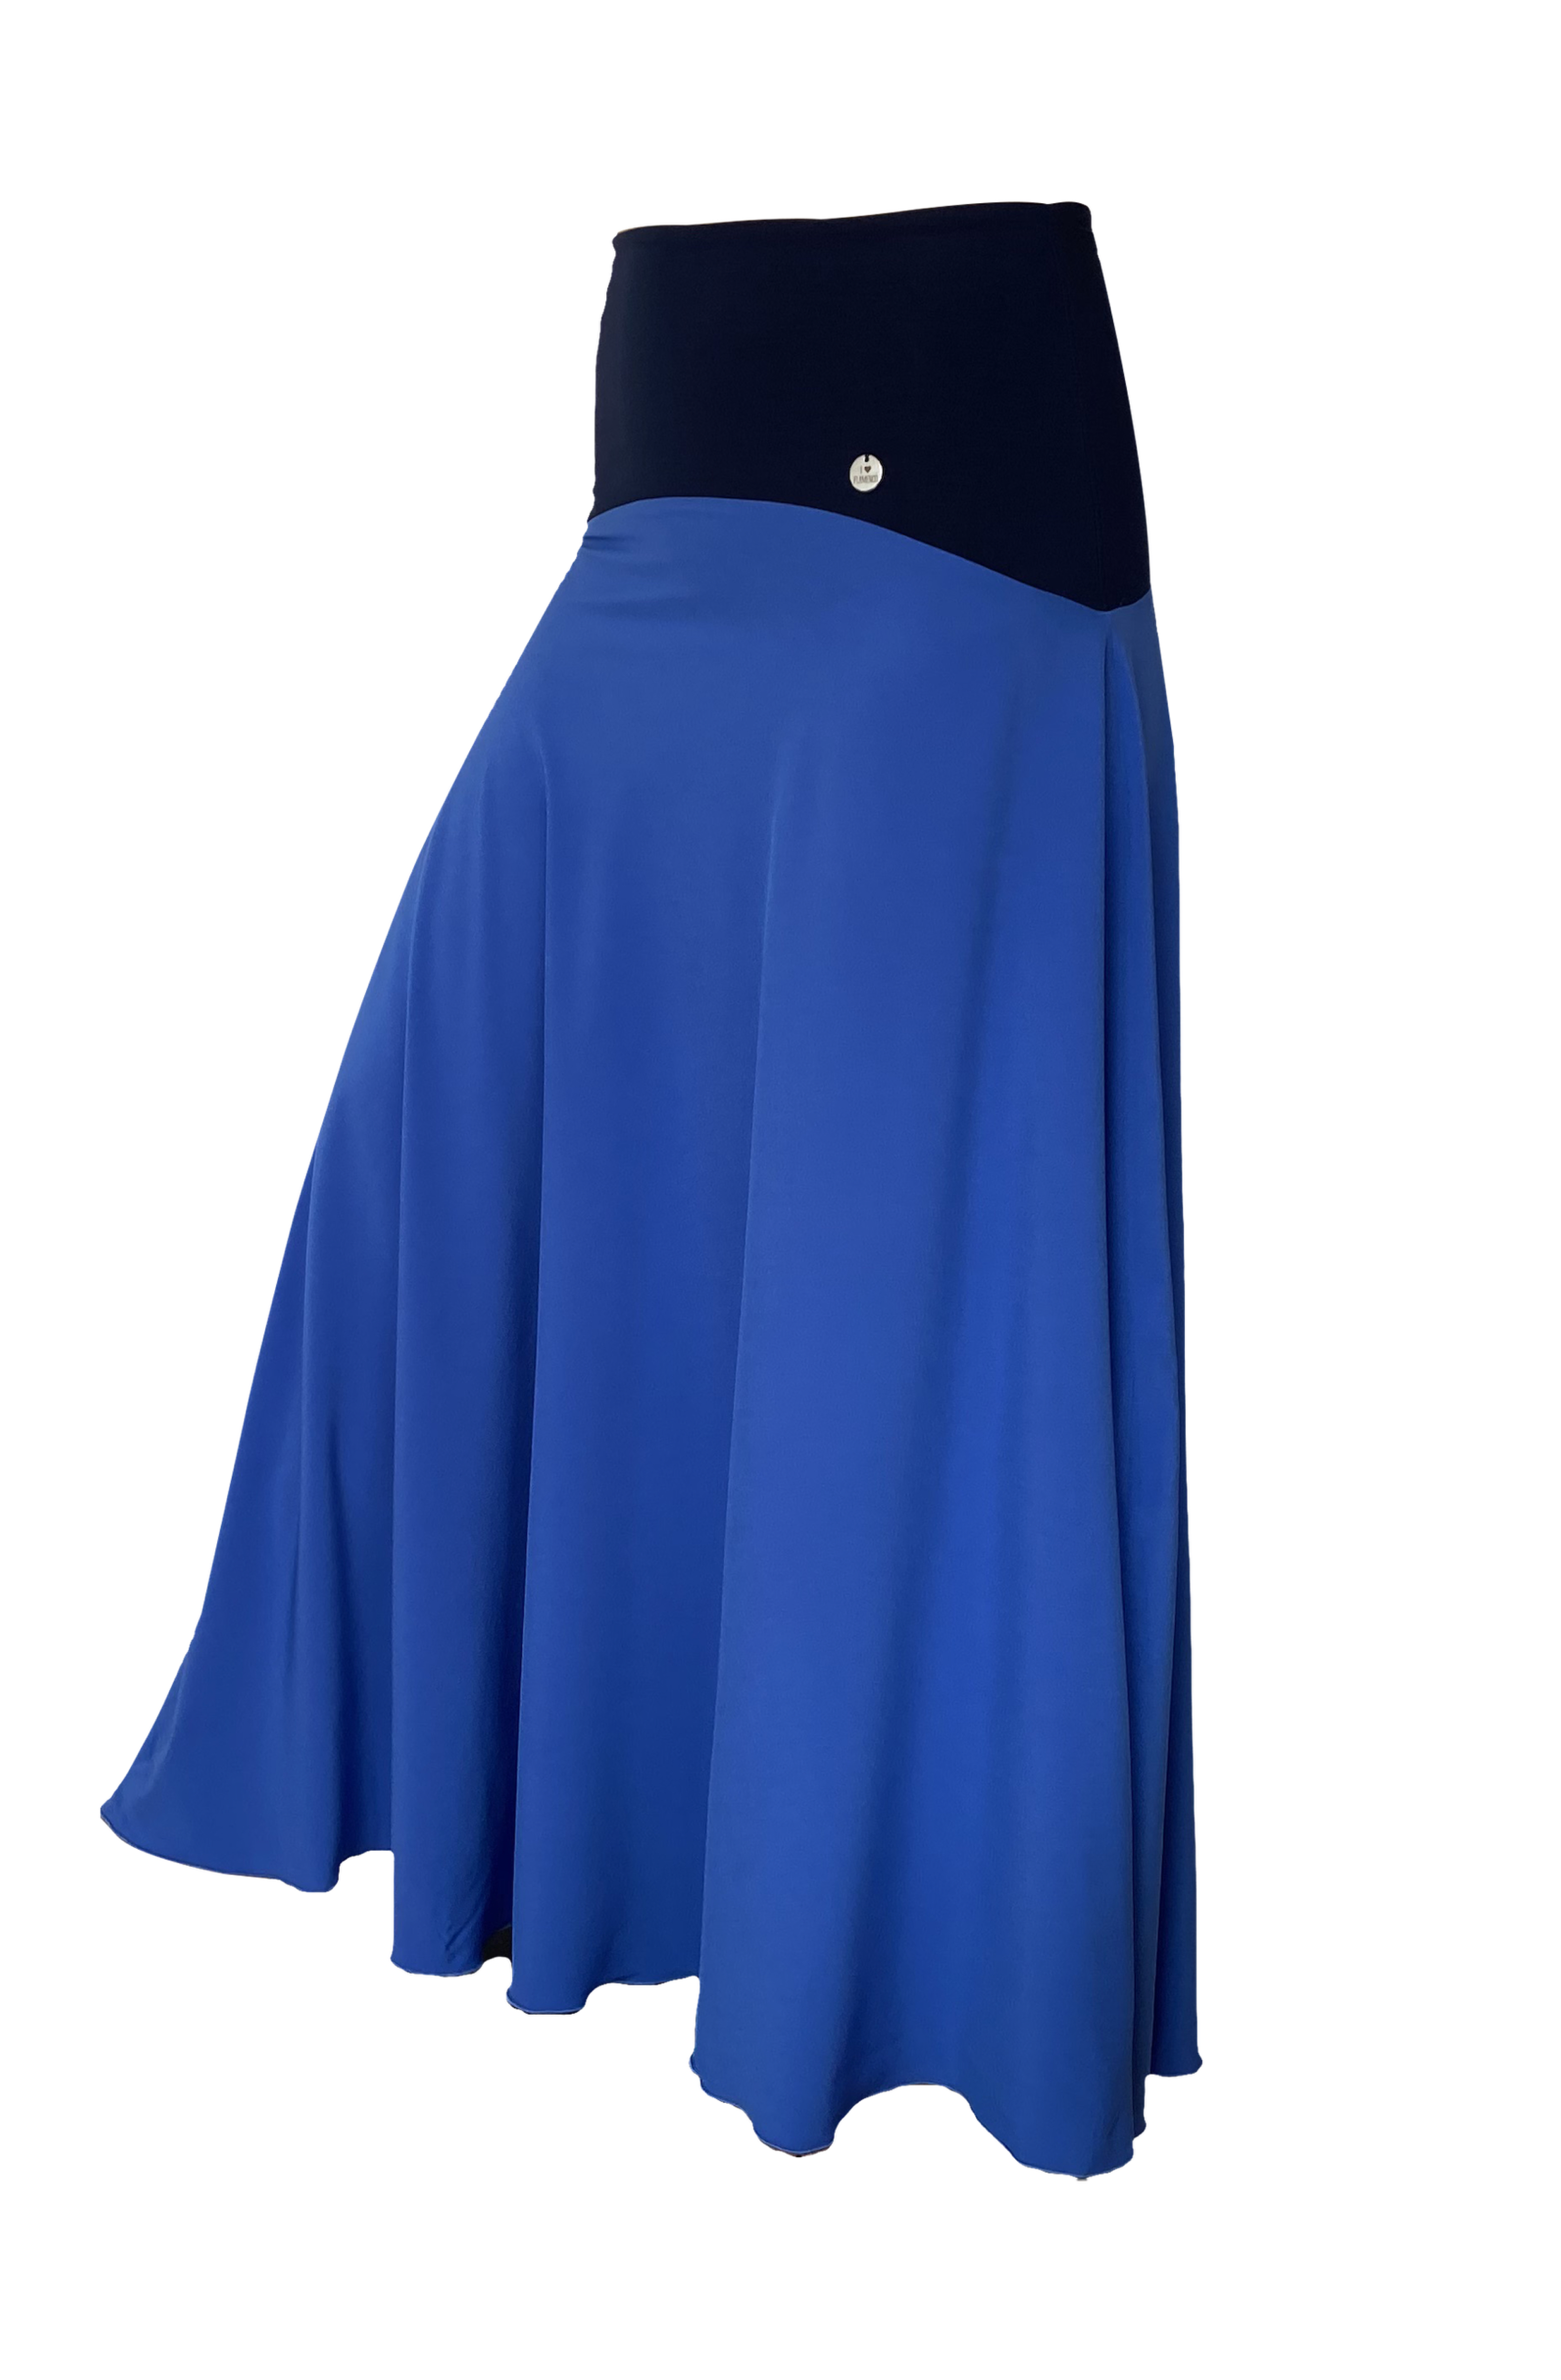 Flamenco Skirt - Practice Skirt - blue - Size S - TANGOS